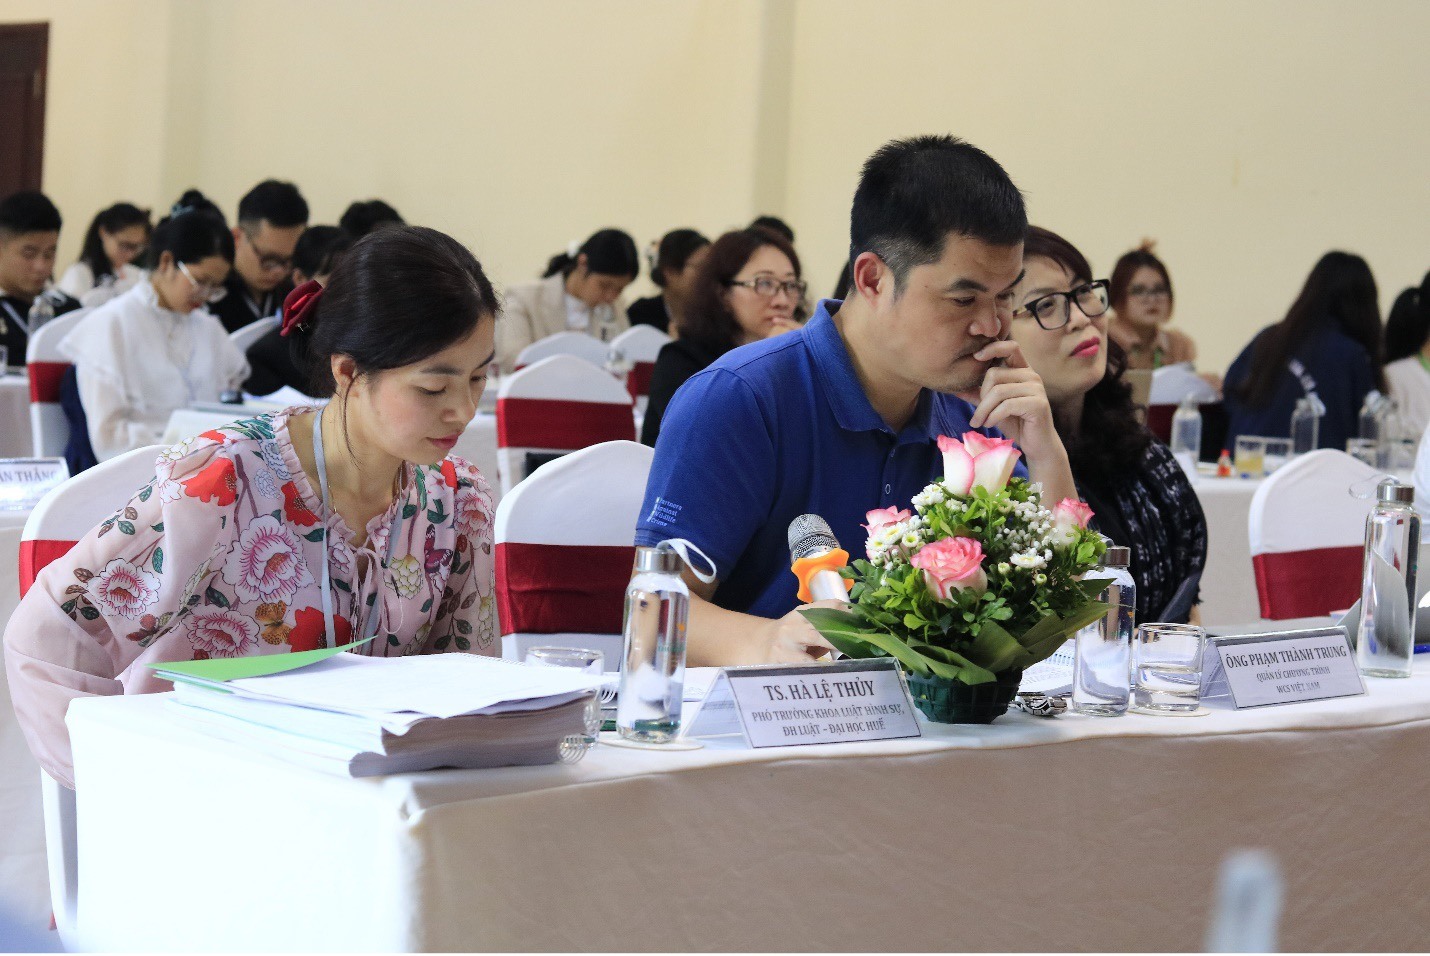 Vòng chung kết của cuộc thi diễn ra tại Thung Nham – Ninh Bình thông qua hình thức Hội thảo khoa học sinh viên trong 2 ngày. 6 đội thi có đề tài xuất sắc nhất sẽ trình bày và trả lời phản biện từ ban giám khảo. Ảnh: Ban tổ chức